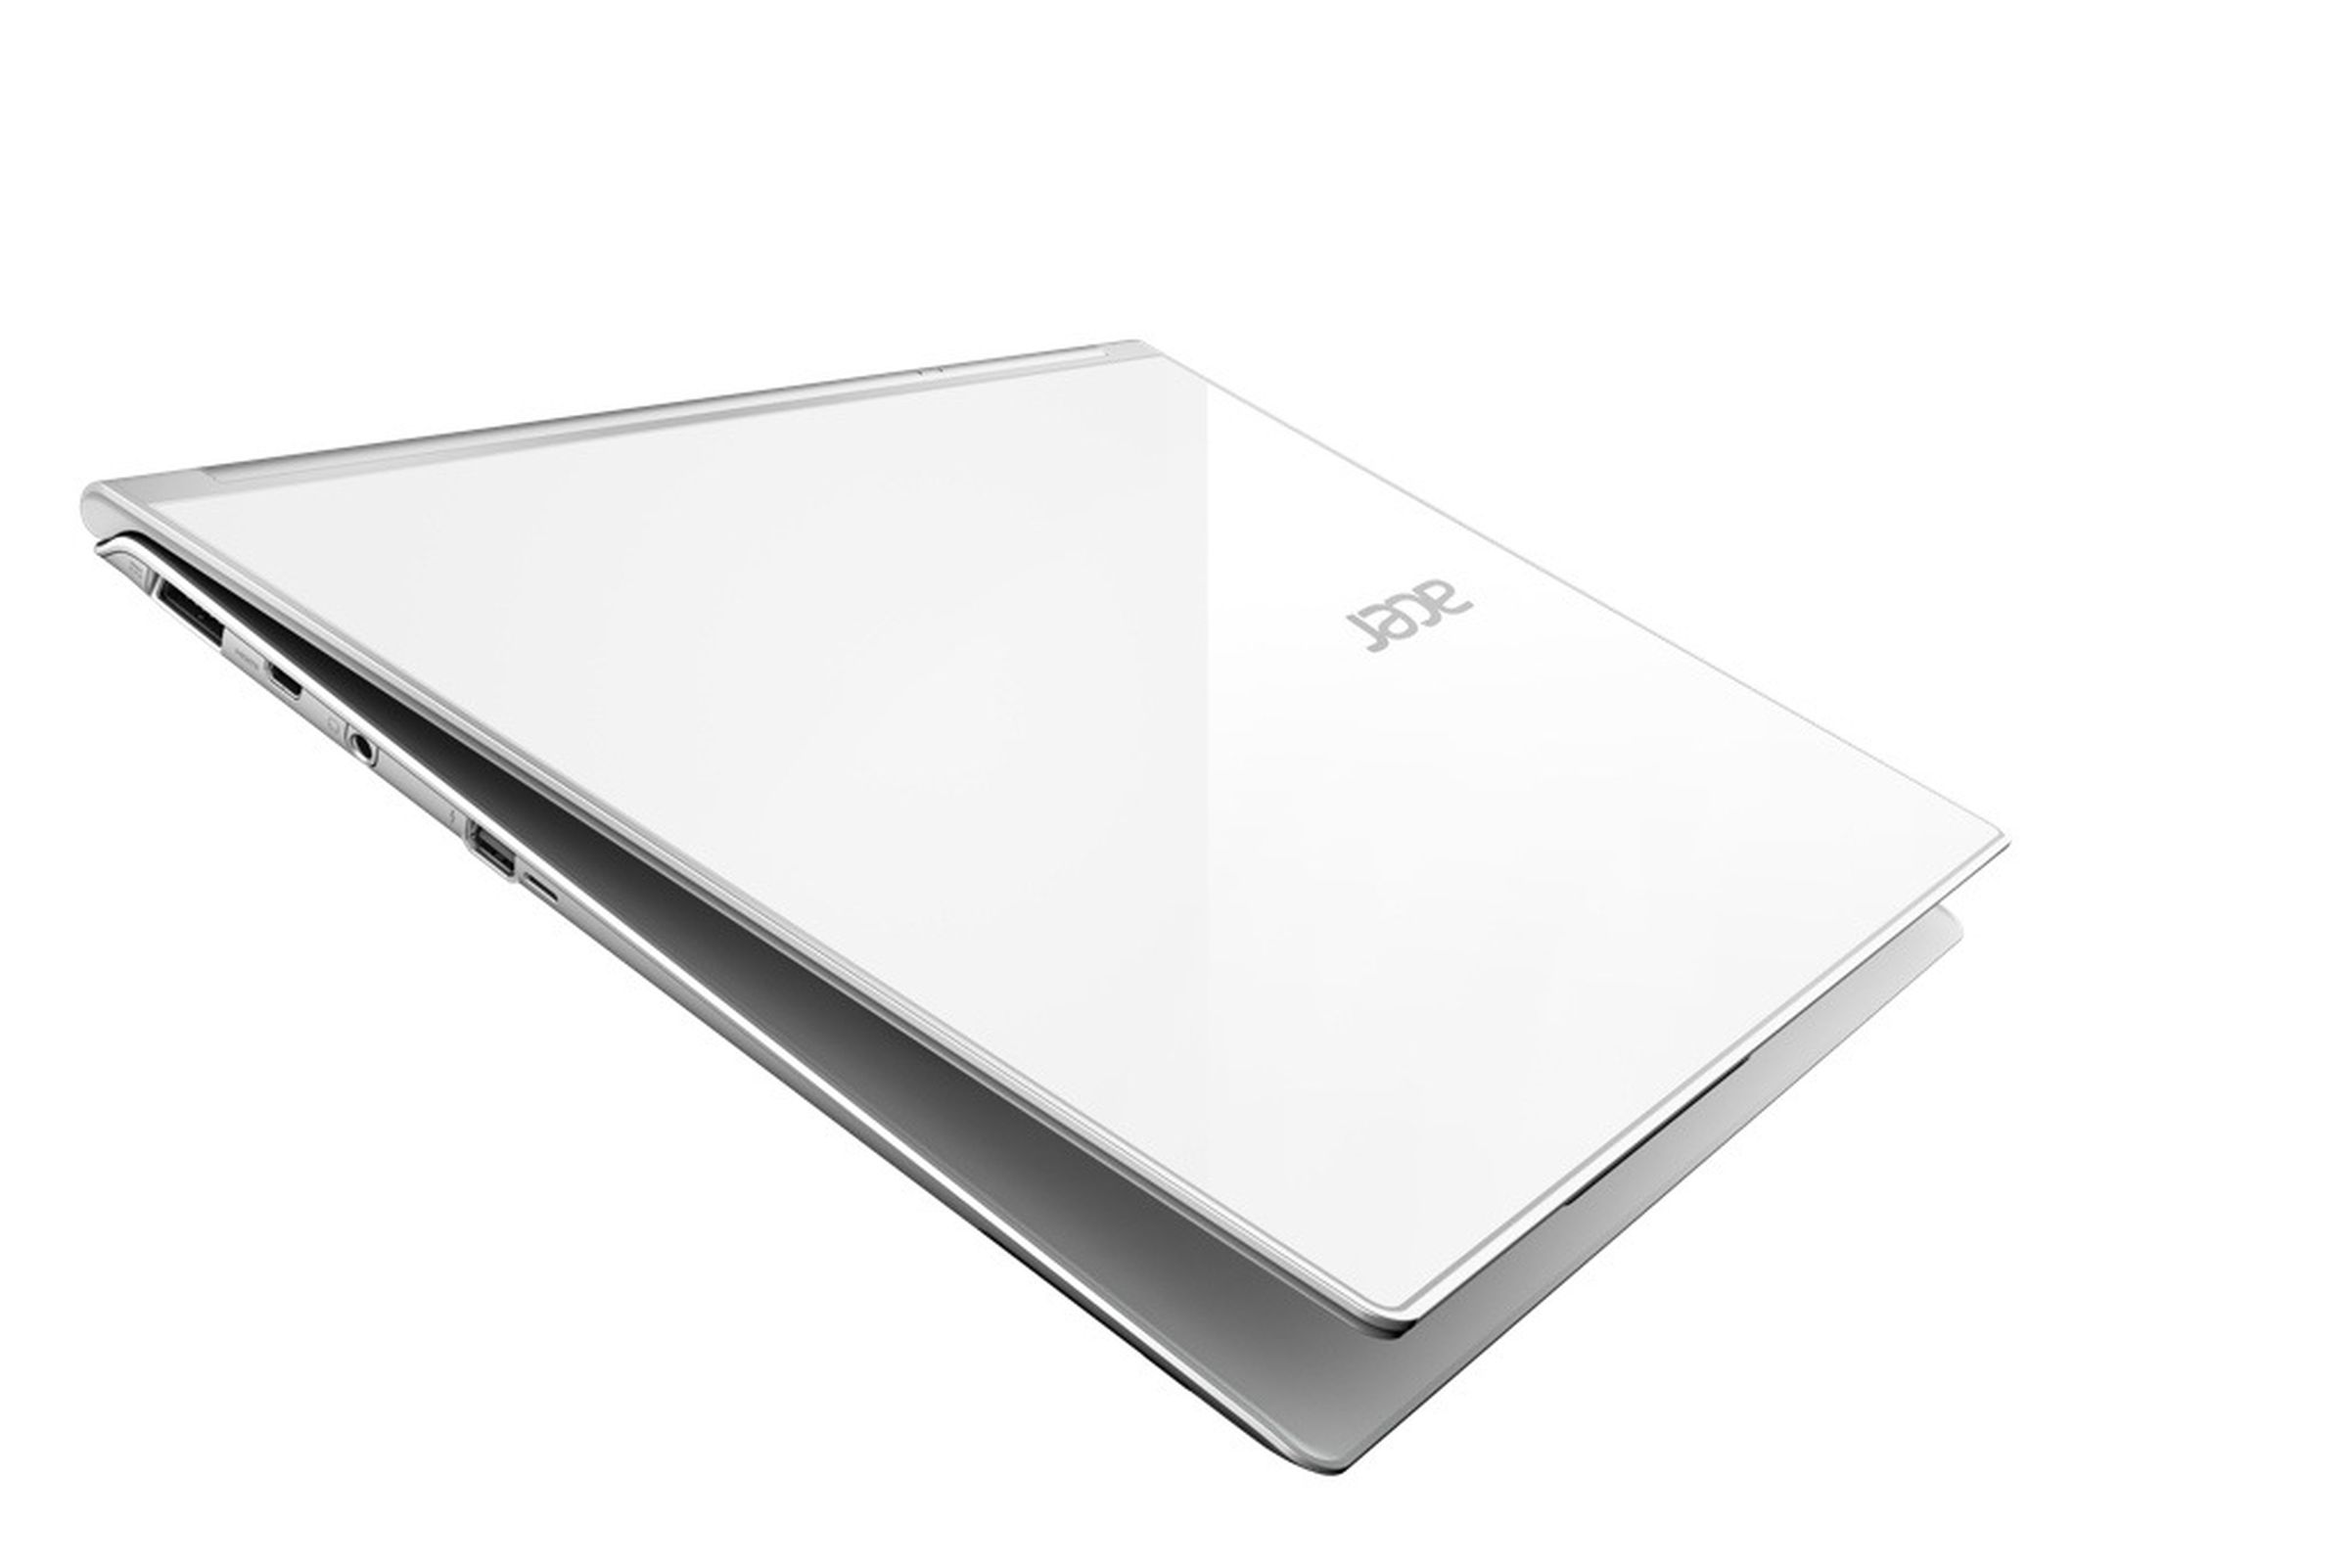 Acer Aspire S7 Windows 8 ultrabooks